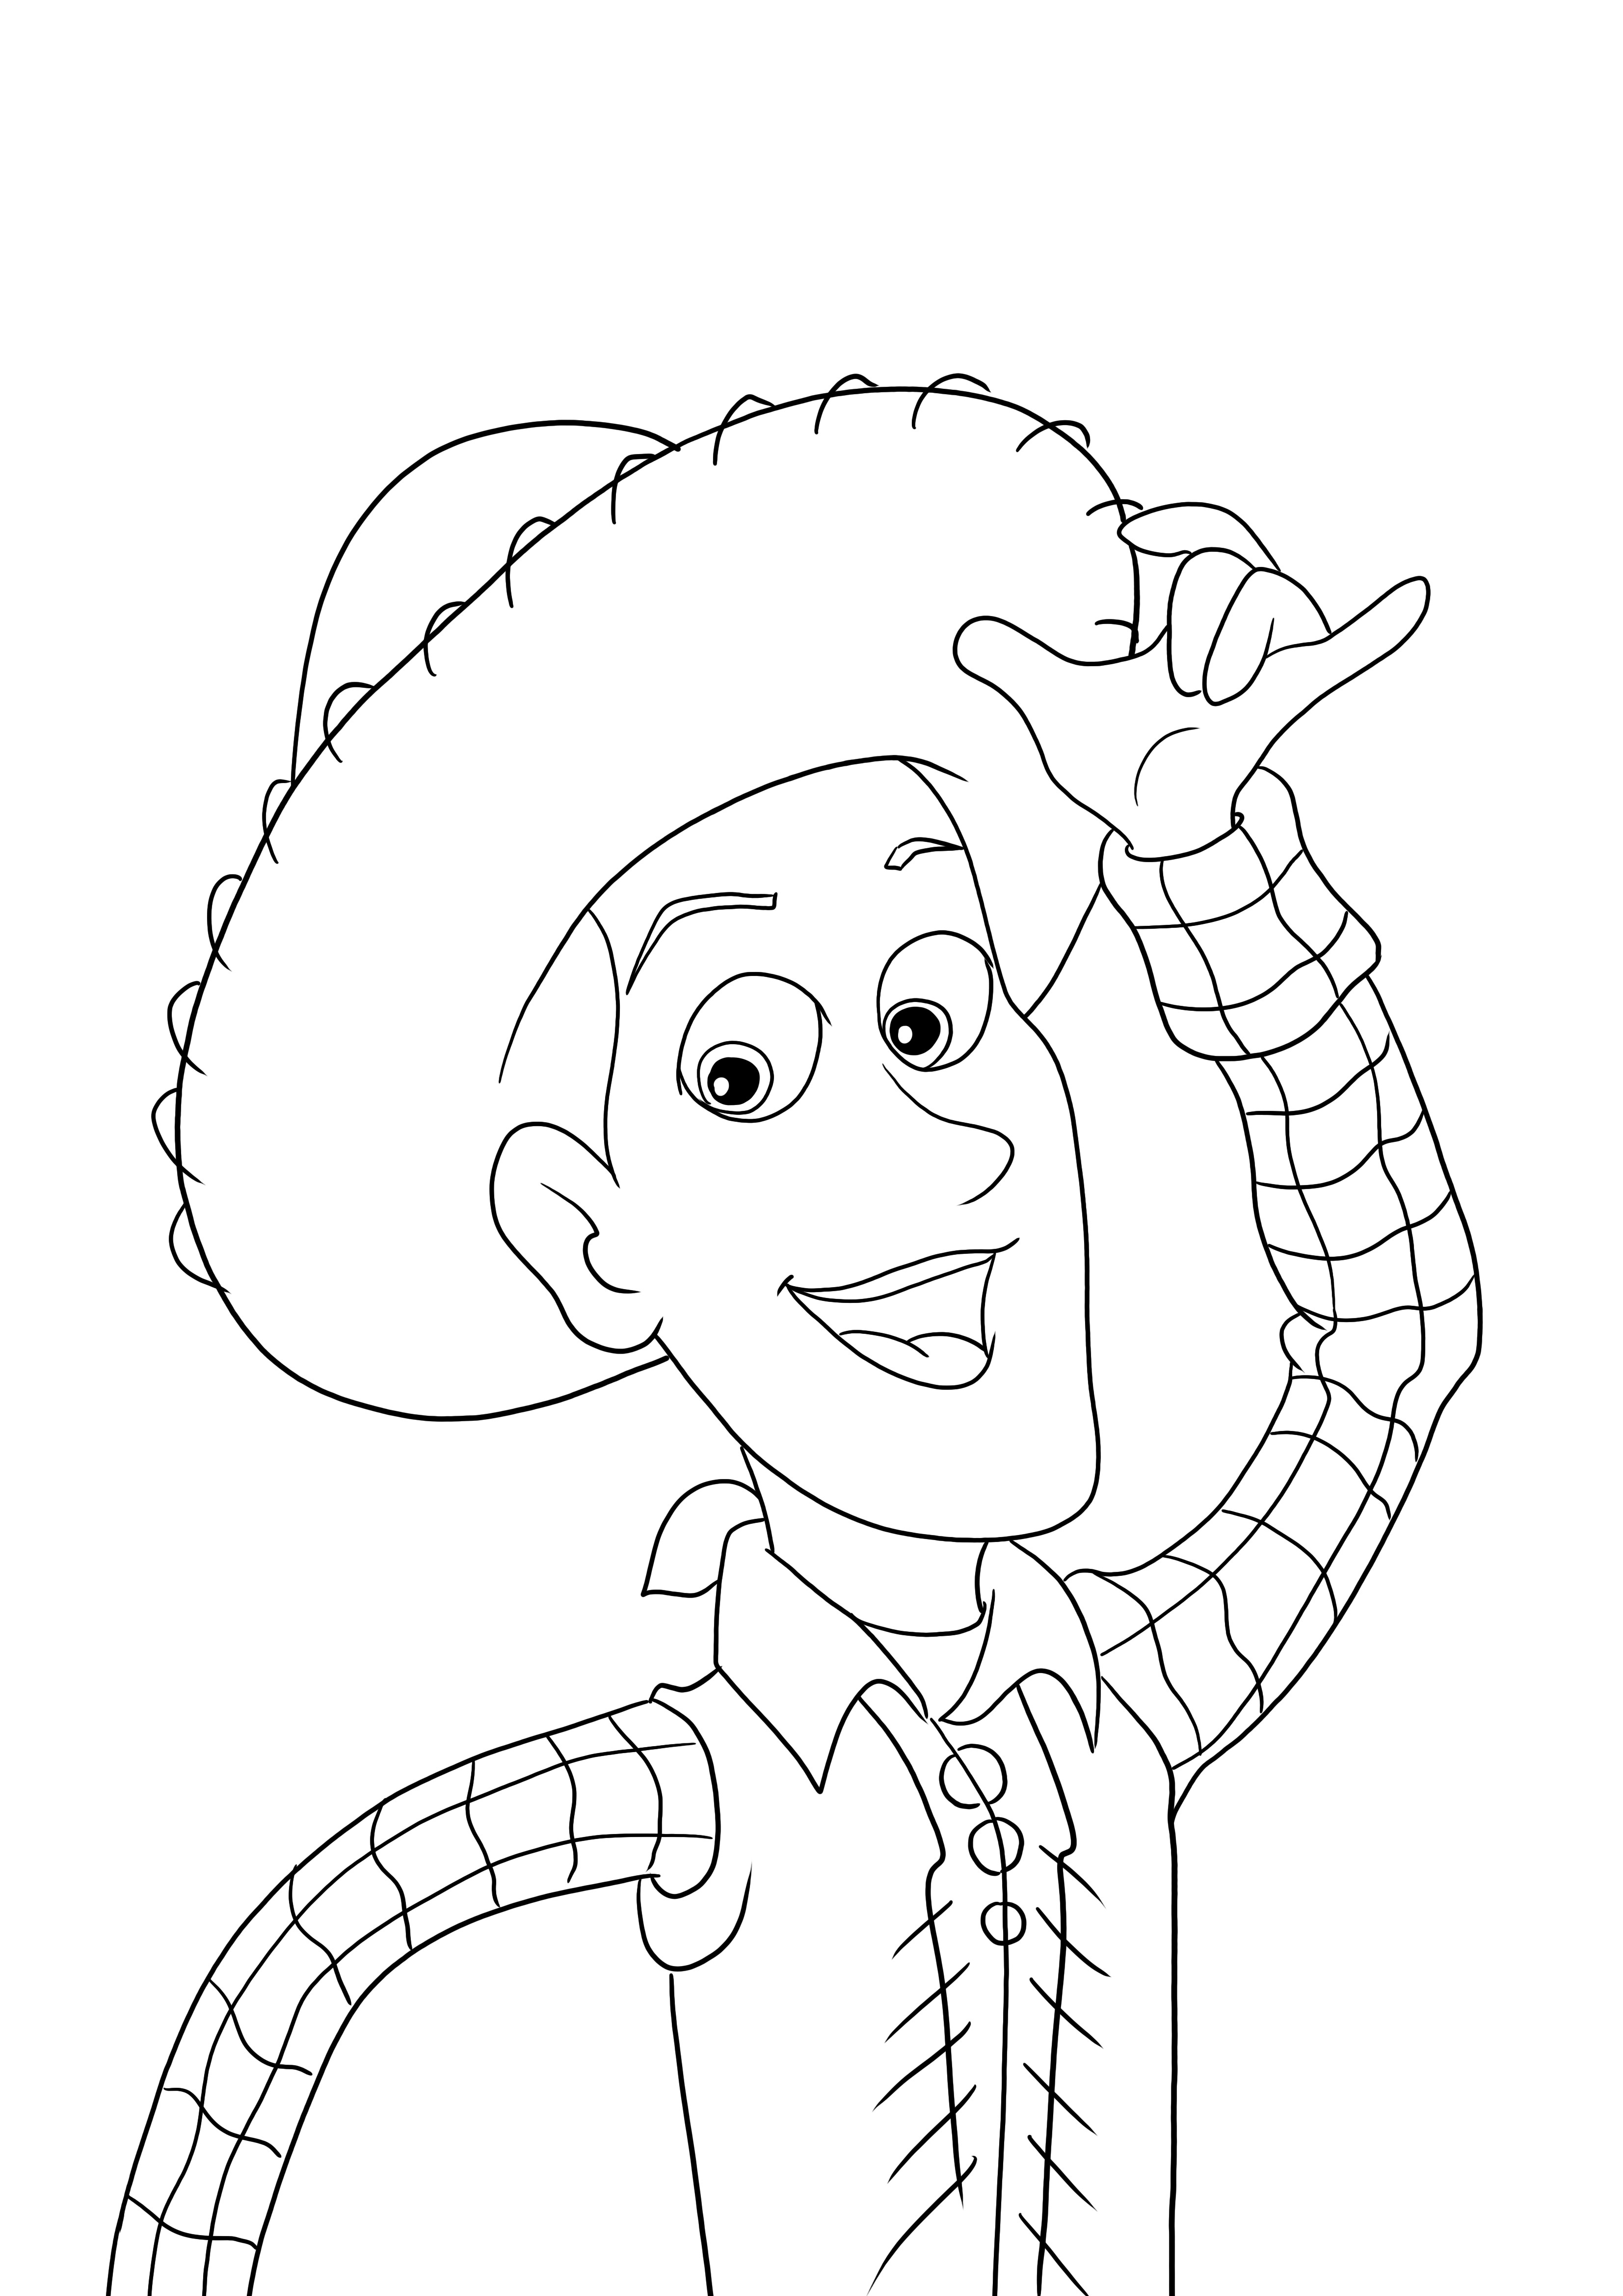 Woody karakter a Toy Story filmből ingyenesen letölthető vagy kinyomtatható és színes